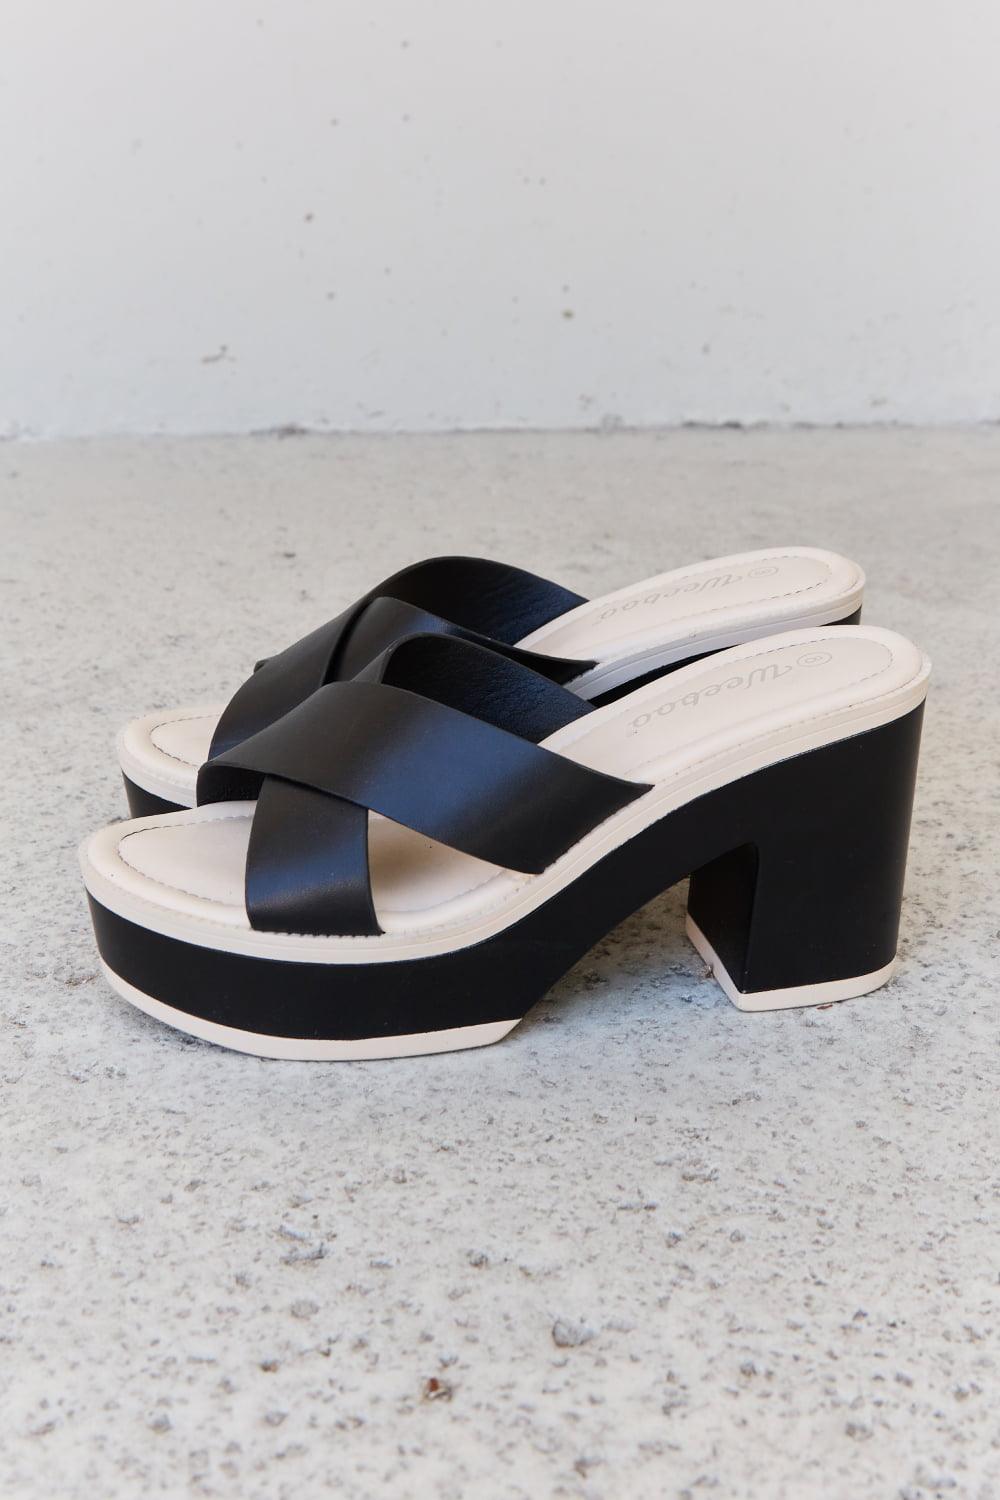 Bona Fide Fashion - Contrast Platform Sandals in Black - Women Fashion - Bona Fide Fashion